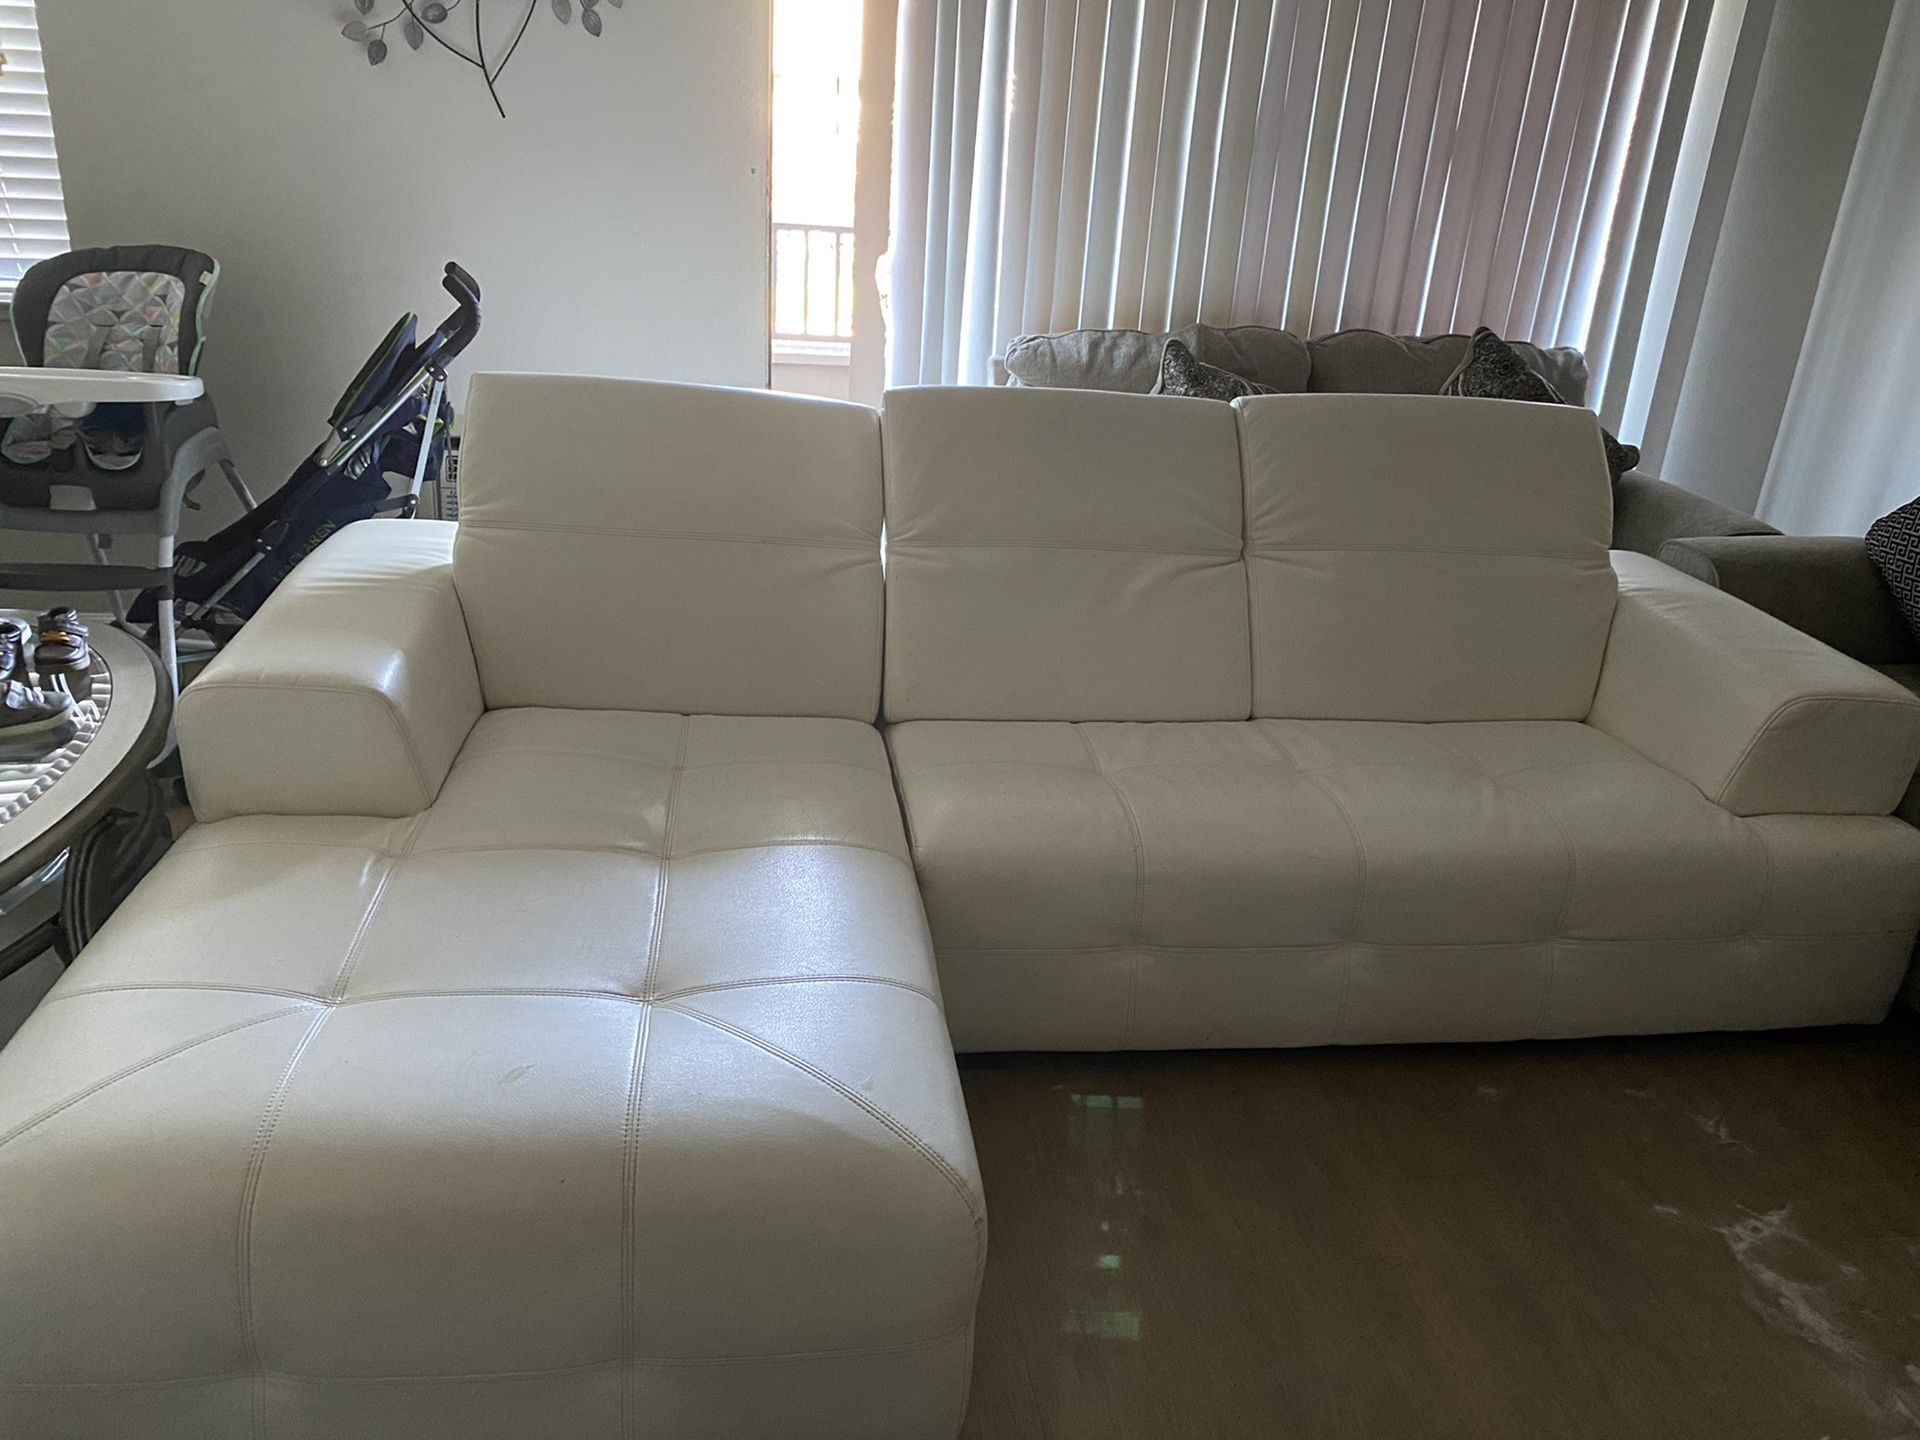 2 sofas living room $300